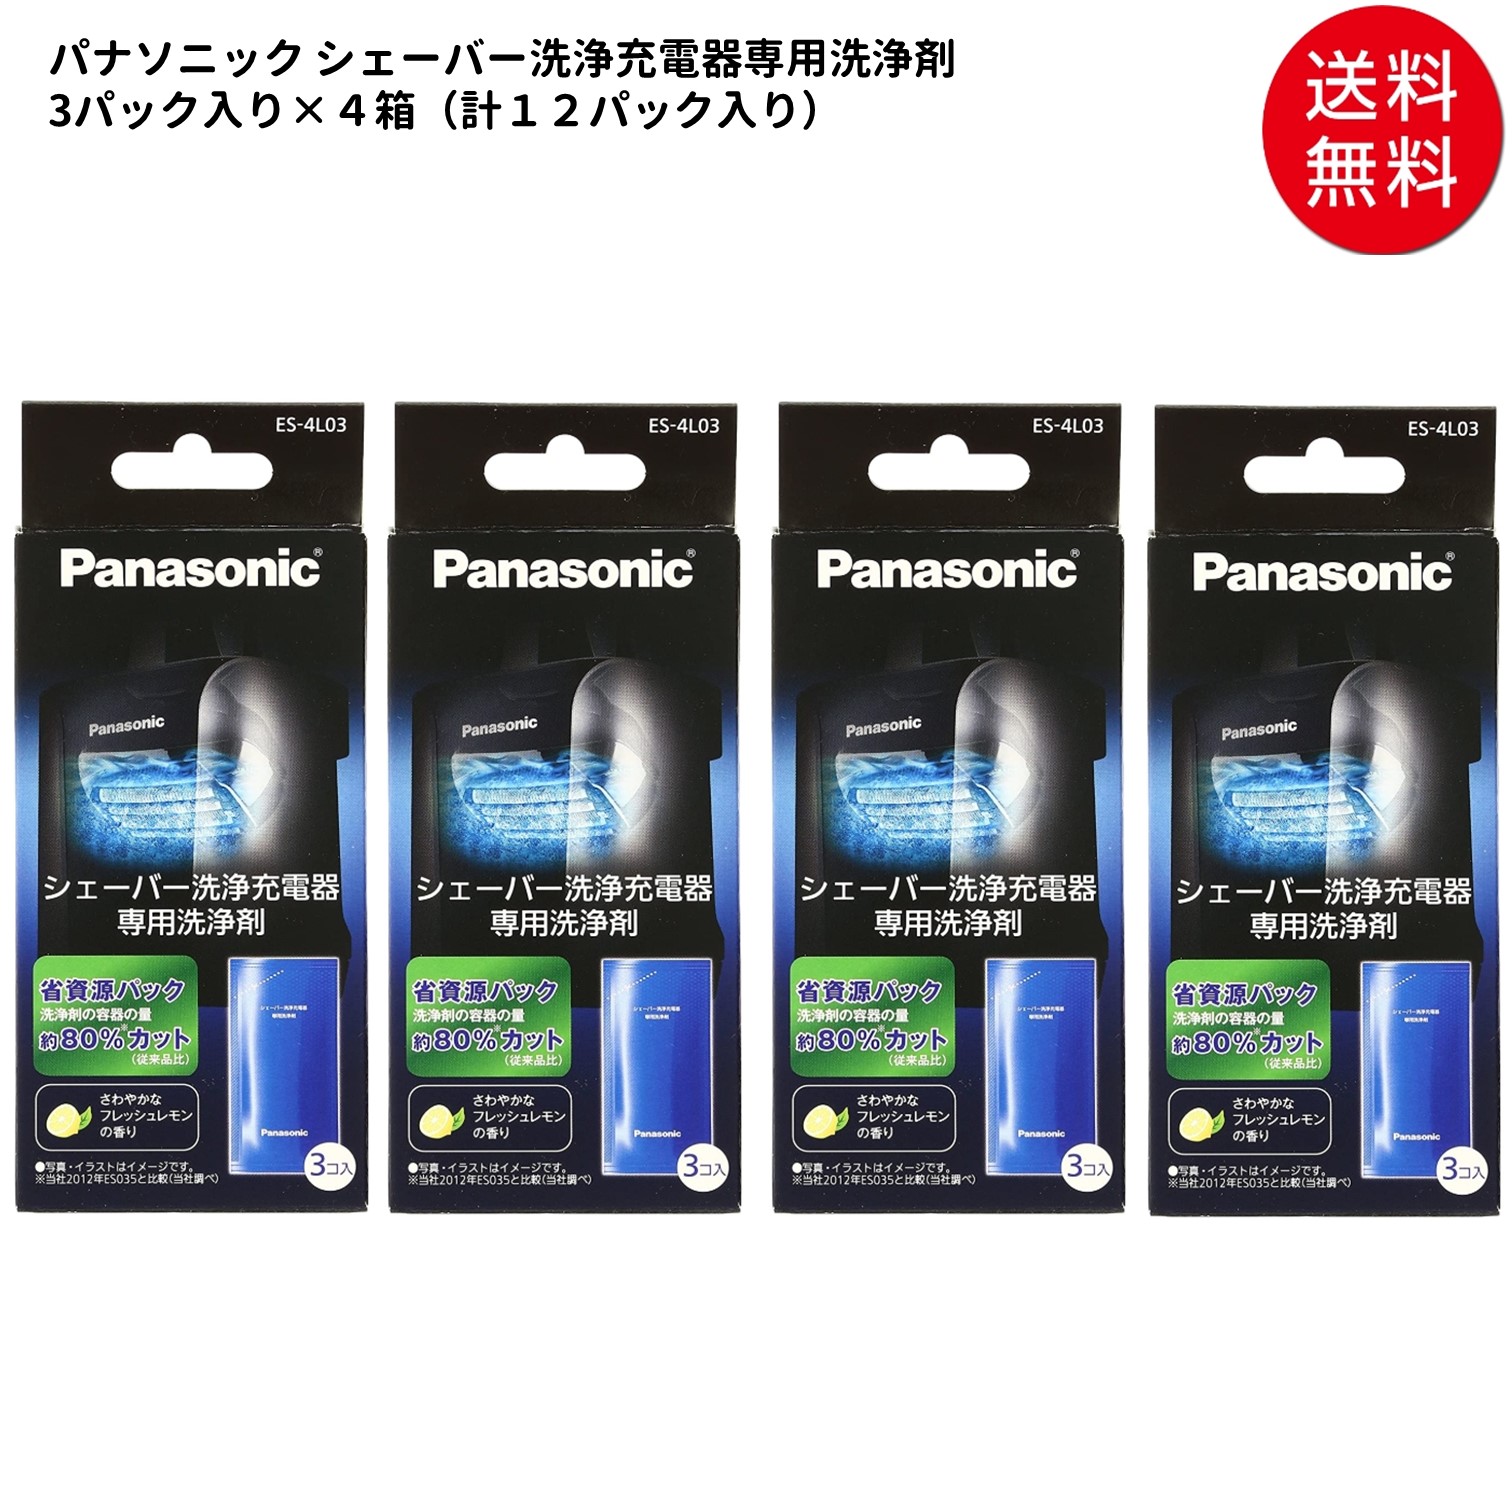 市場 3個入り 4セット シェーバー洗浄充電器 パナソニック Panasonic